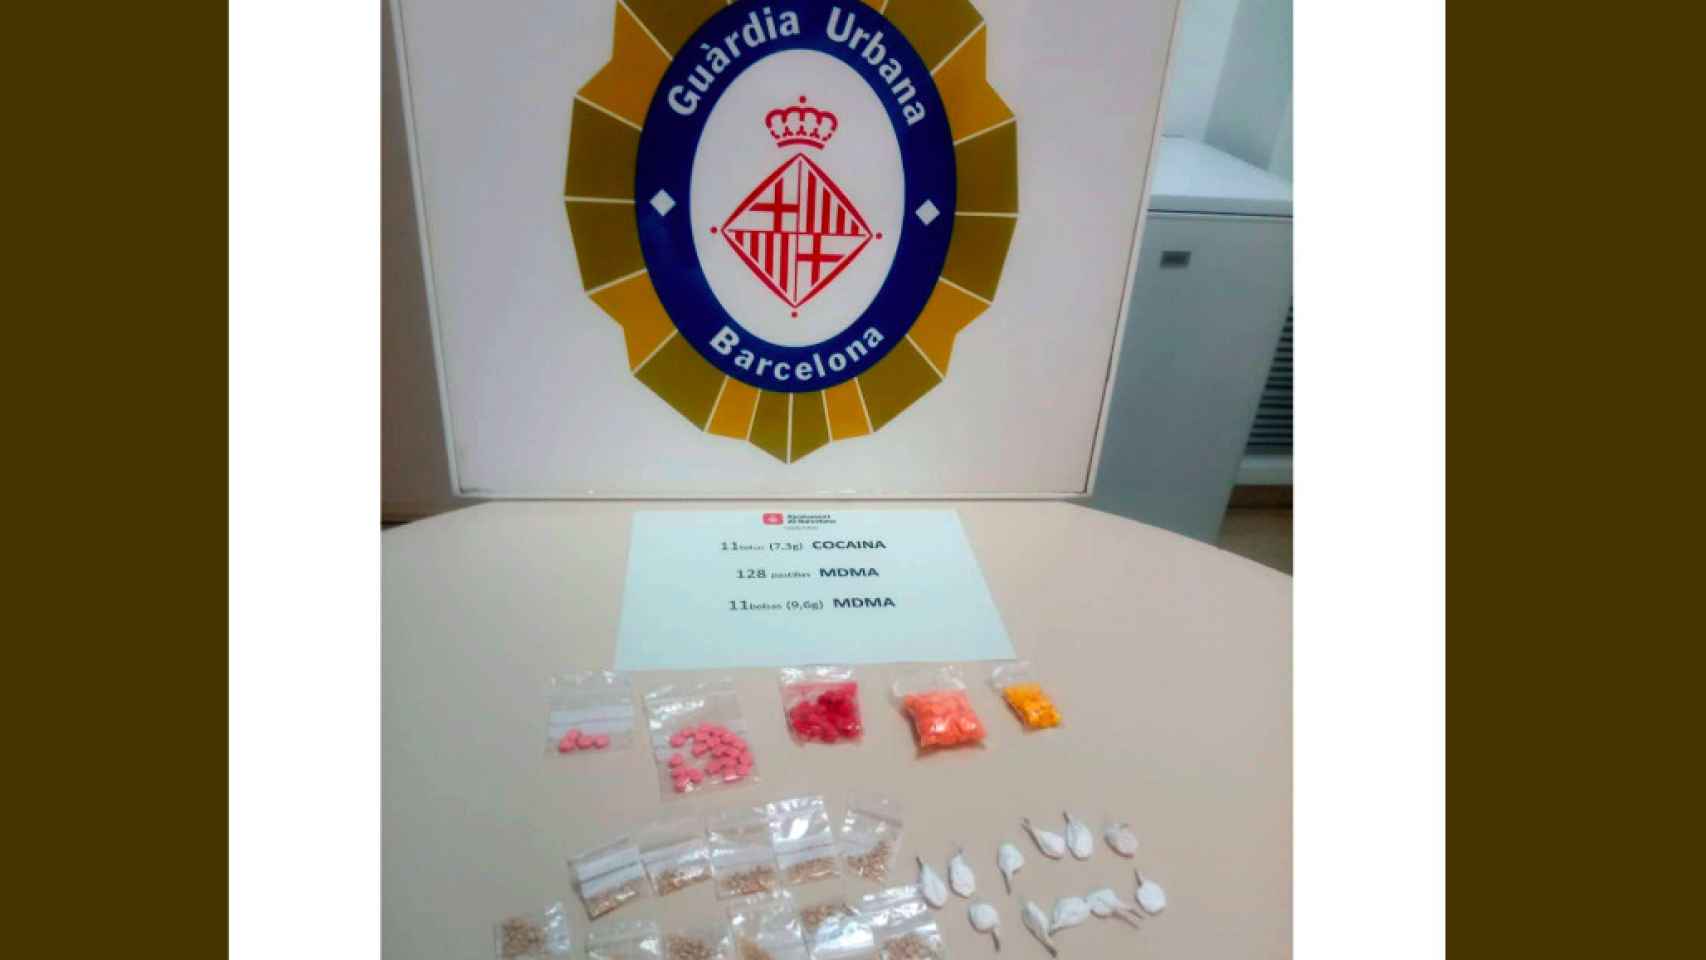 11 dosis de cocaína, 11 más de MDMA y 128 pastillas incautadas por la Guardia Urbana